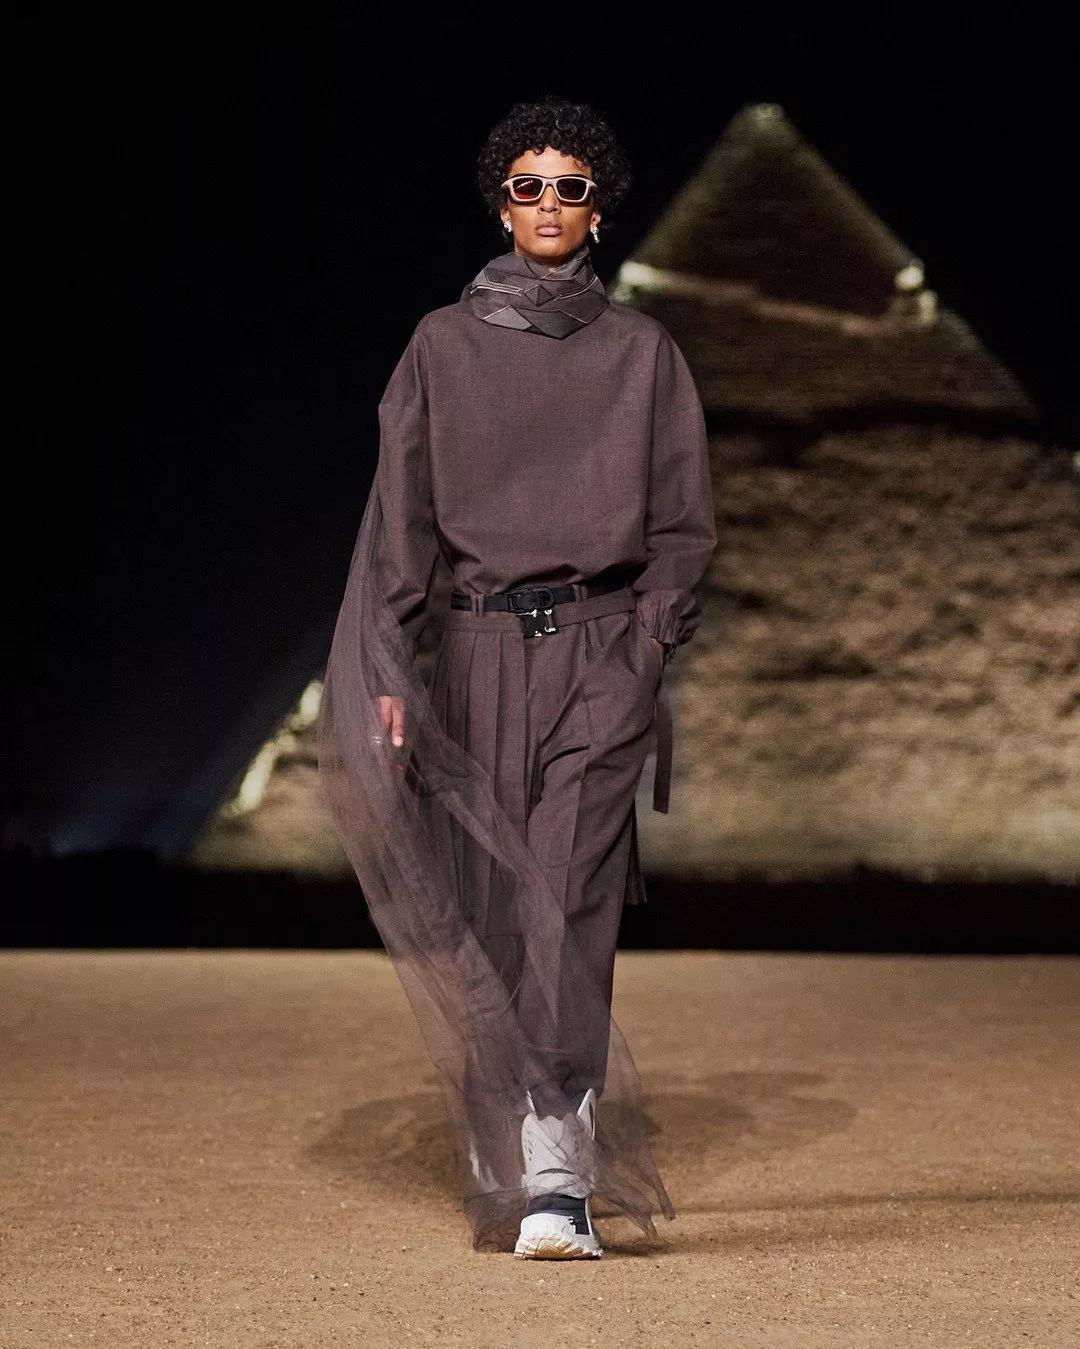 Dior تقدّم مجموعتها التحضيرية للملابس الرجالية لخريف 2023 في مصر. عرض مُبهر سيطبع التاريخ